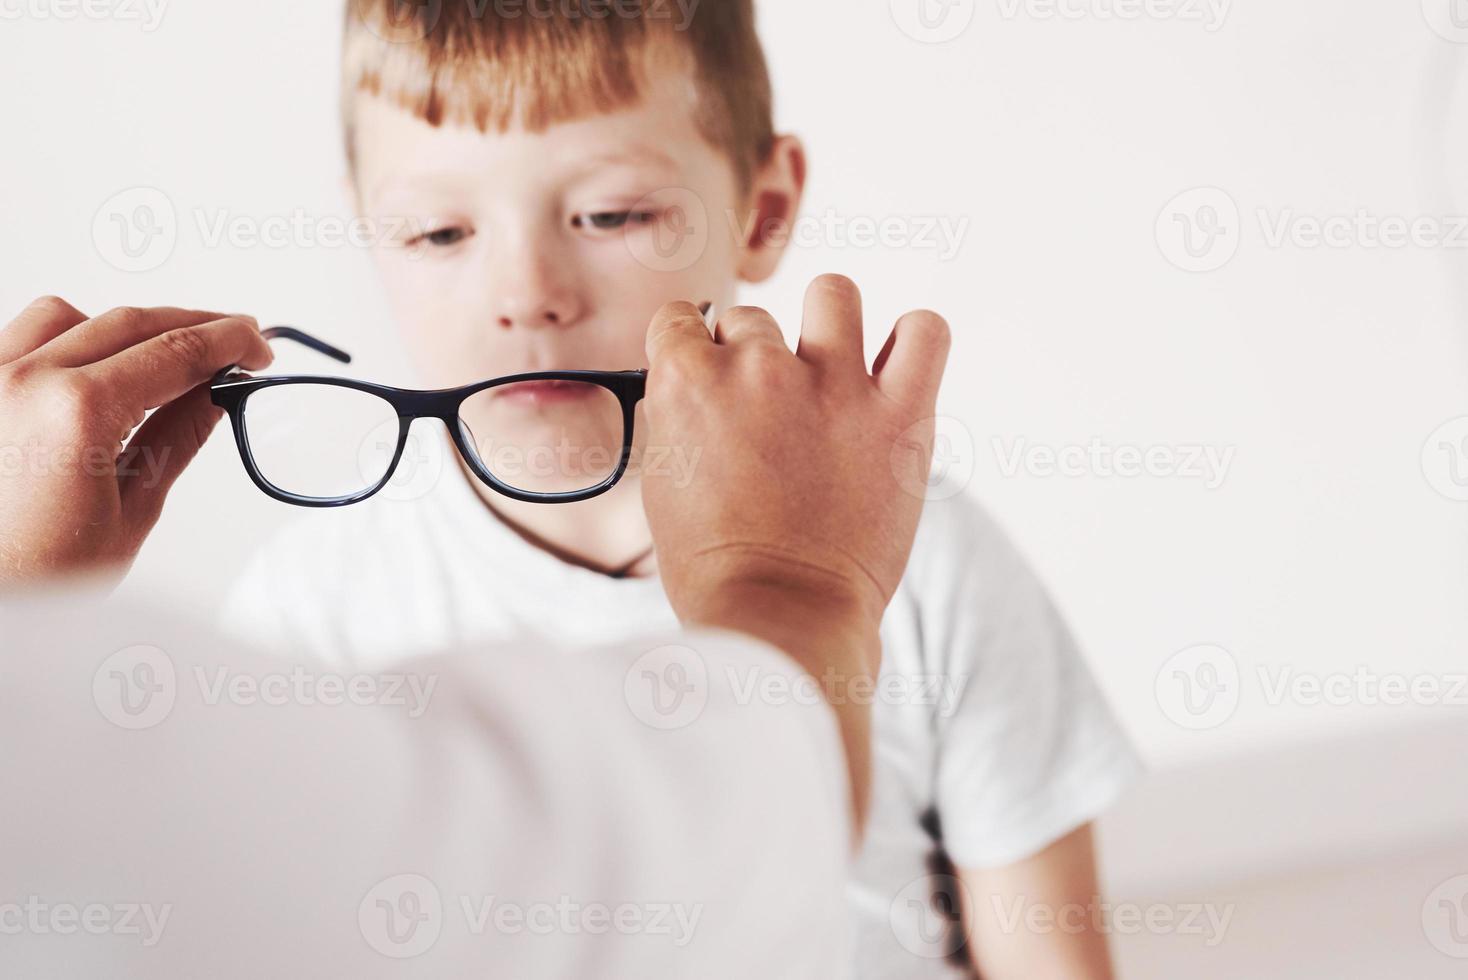 probemos este modelo. doctor dando al niño nuevas gafas negras para su visión. foto